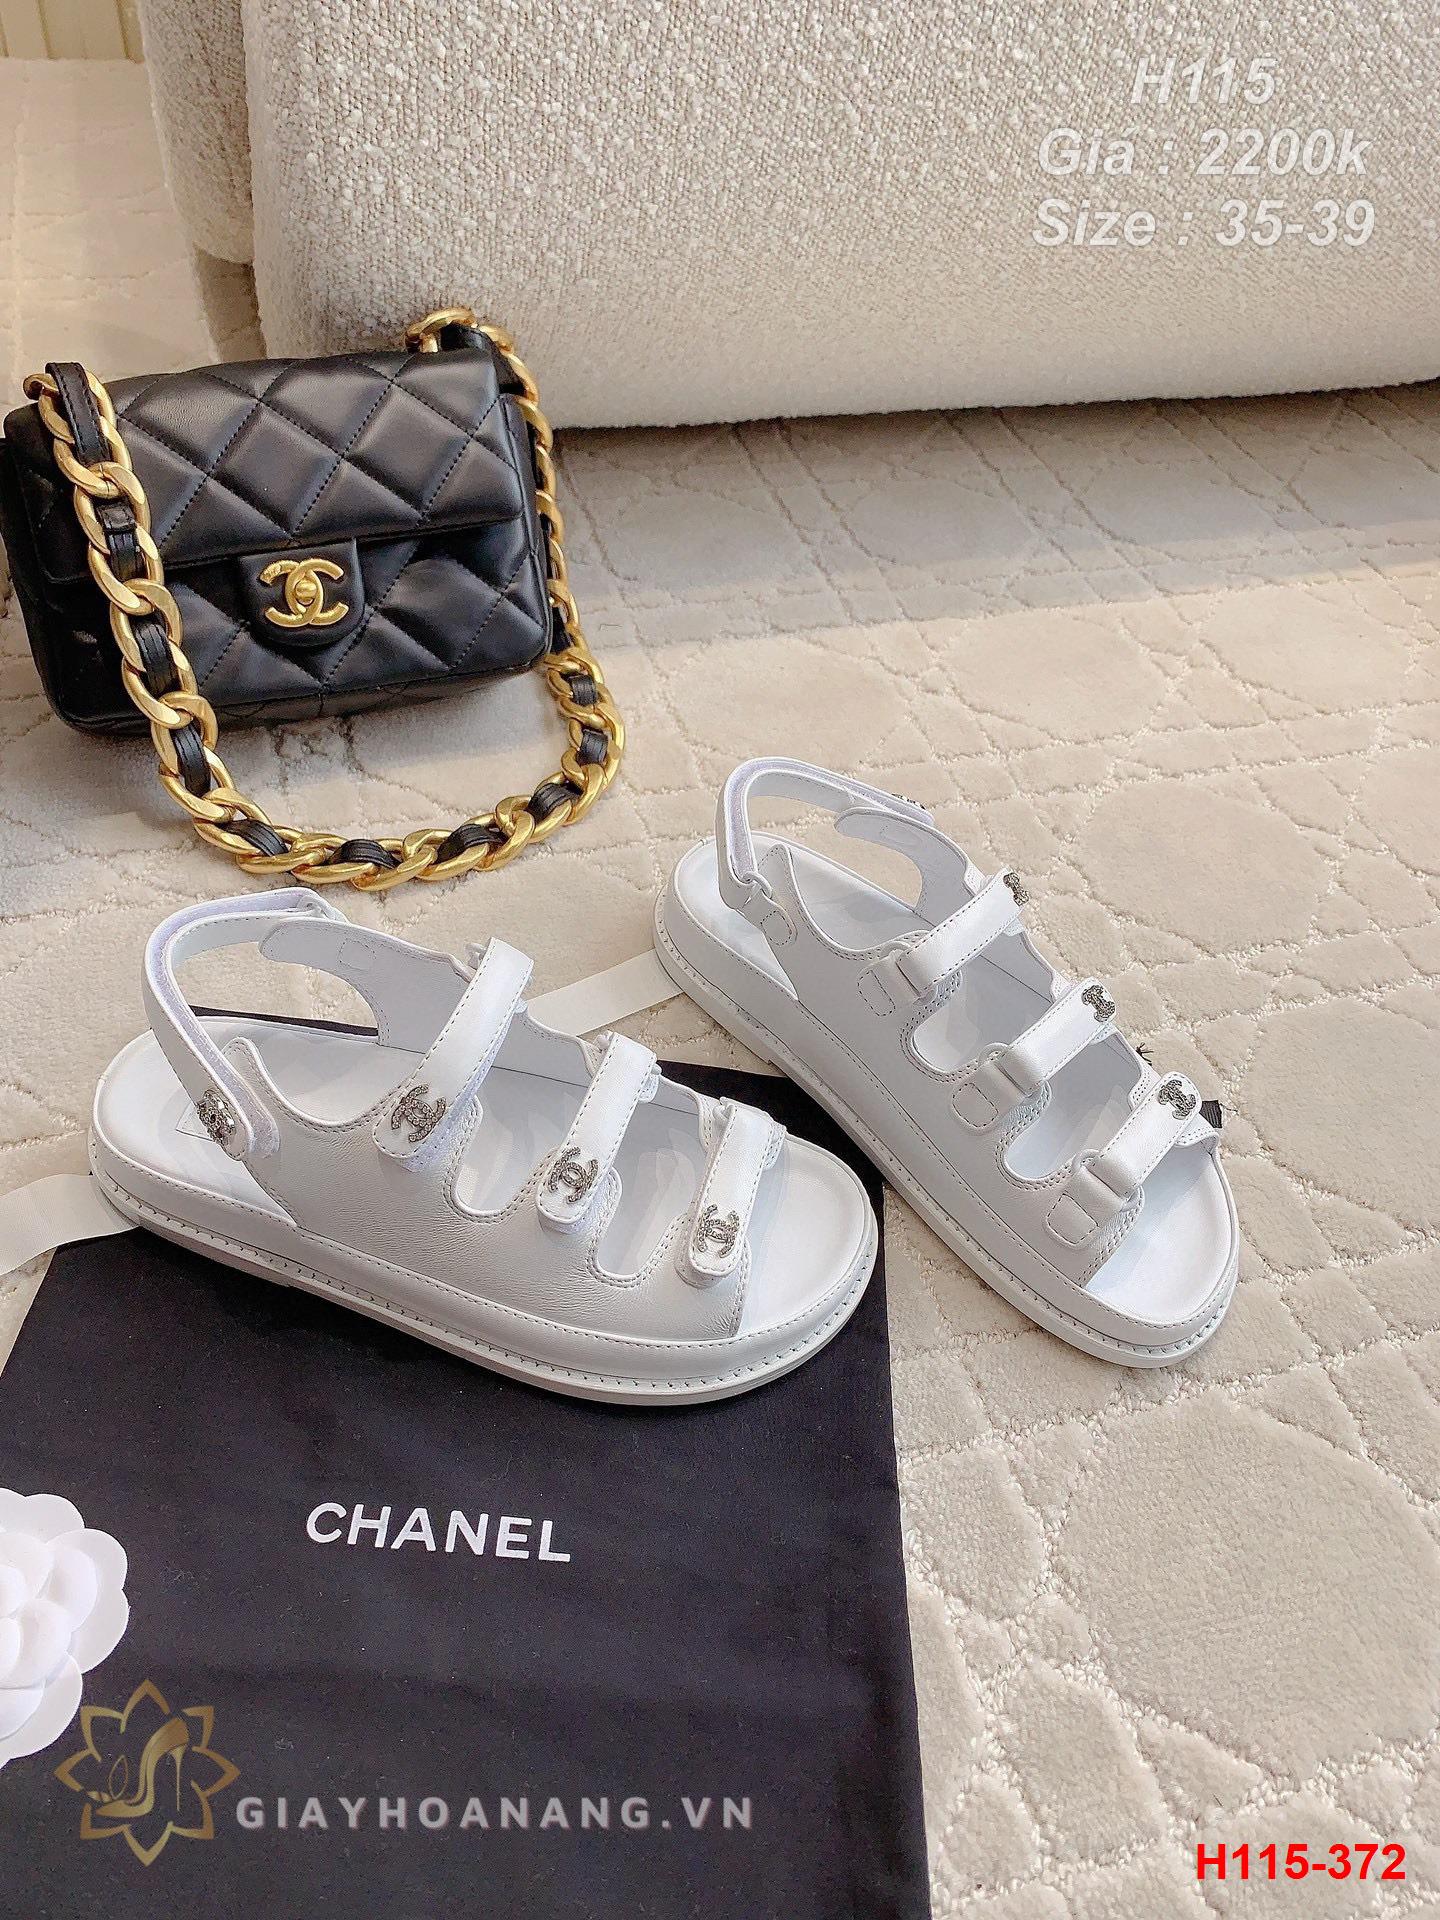 H115-372 Chanel sandal siêu cấp